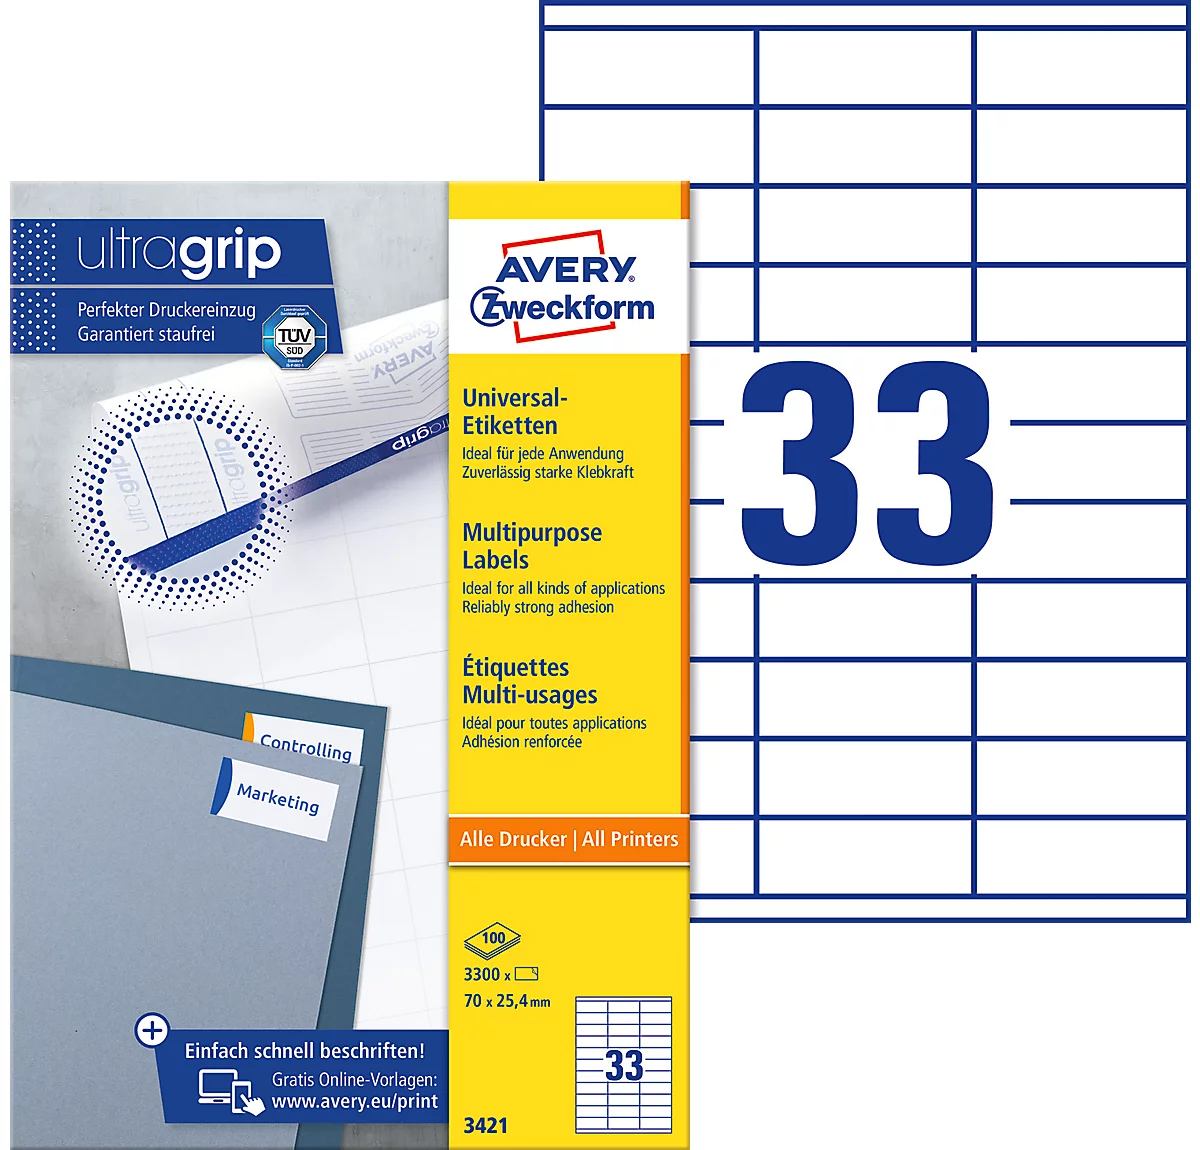 AVERY Zweckform Universal-Etiketten 3421, ultragrip, 70 x 25,4 mm, 3300 Stück